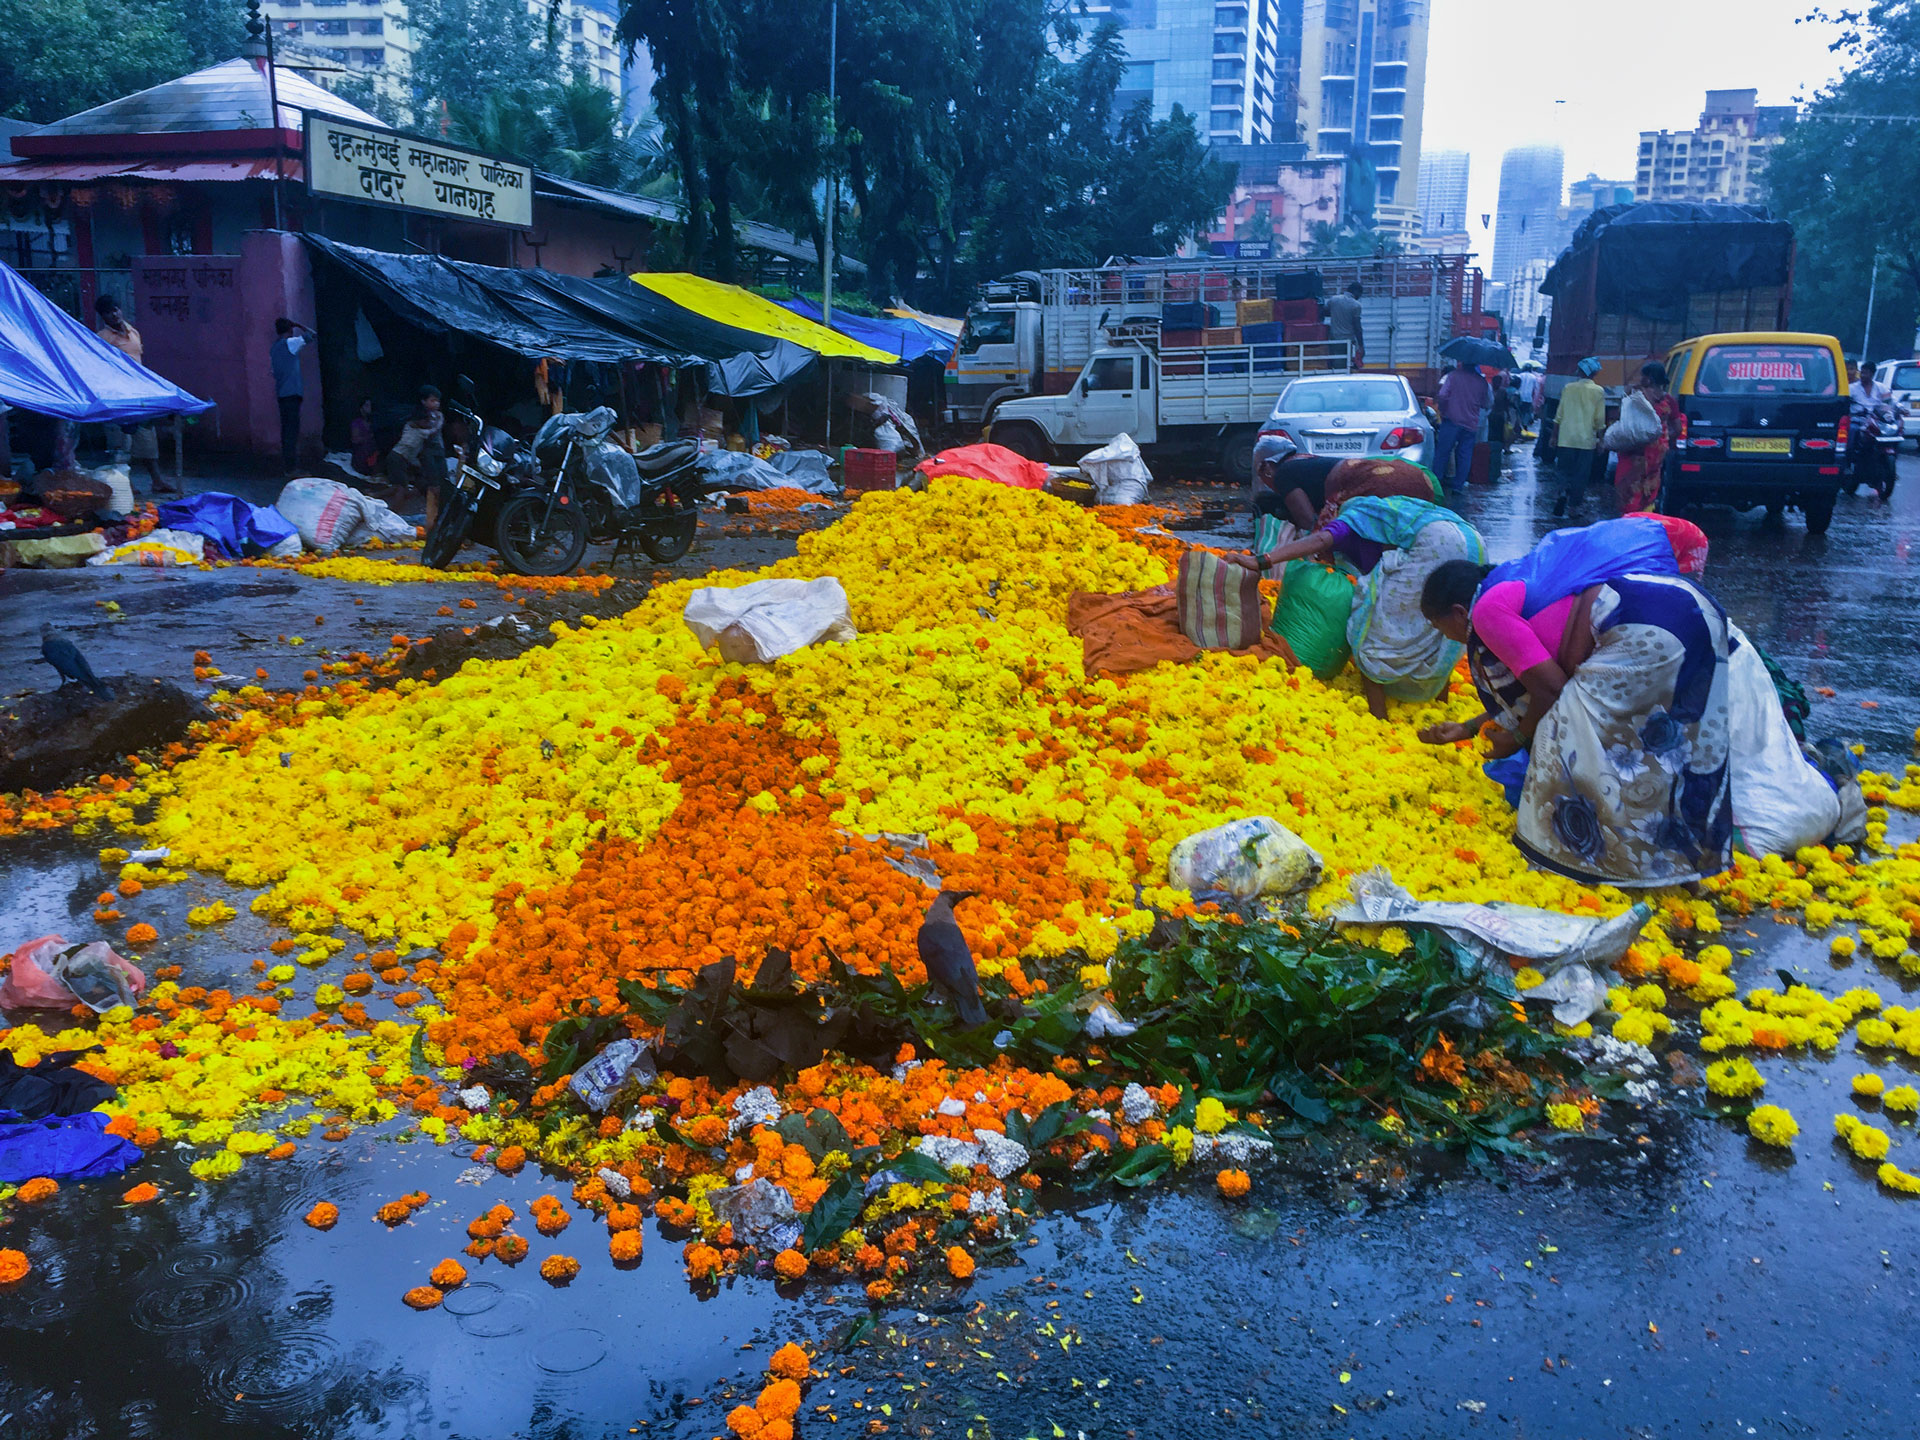 Kvetinový trh